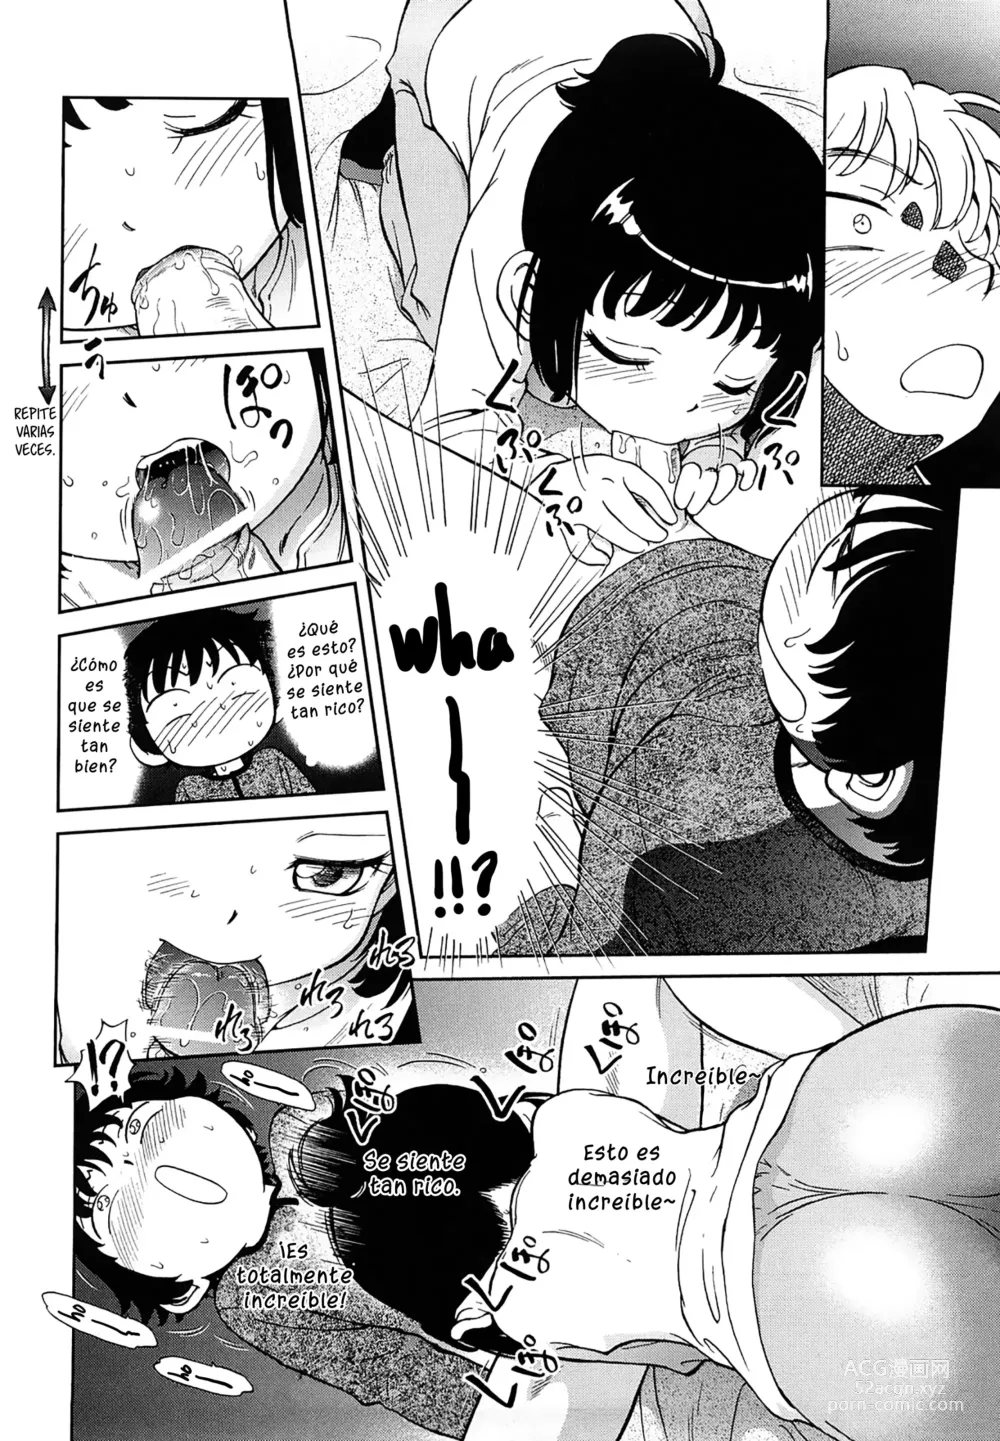 Page 14 of manga Lecciones confinadas de hermanos lascivos